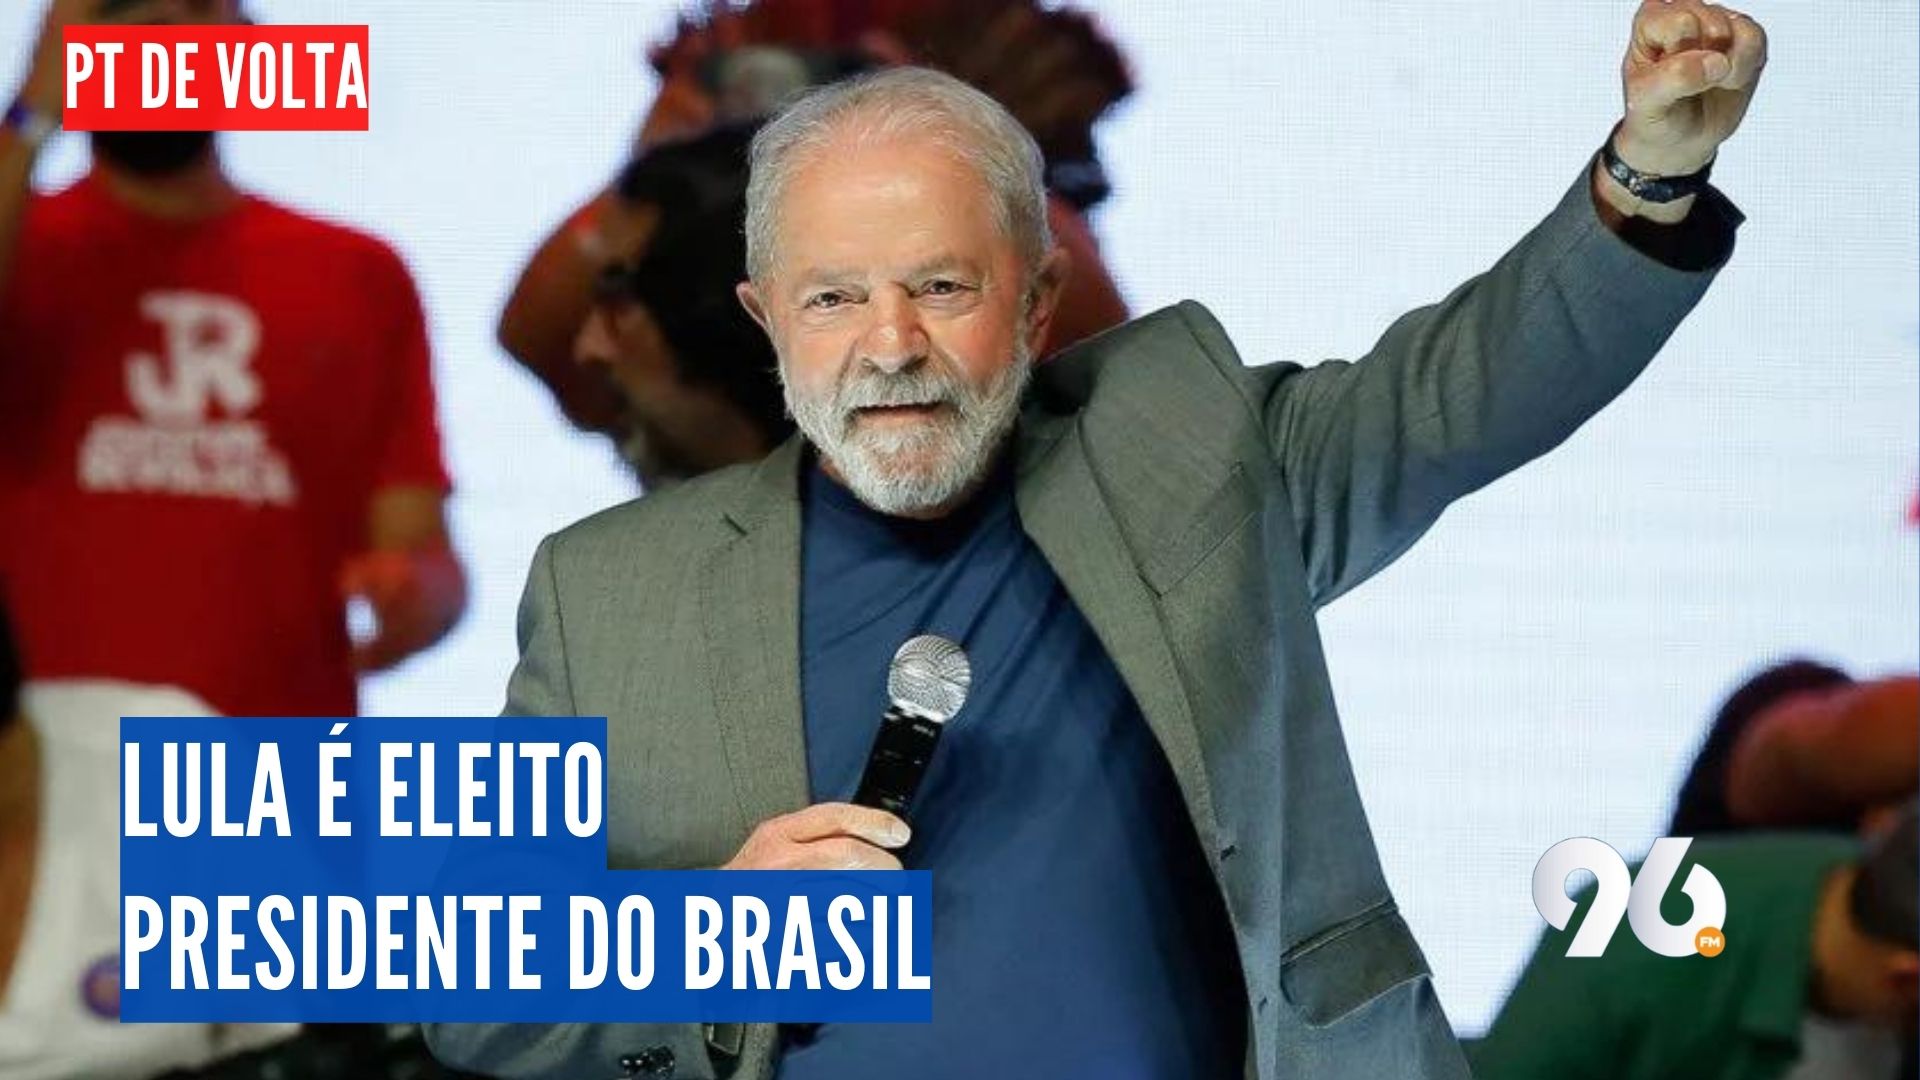 Lula derrota Bolsonaro com menor margem da história e é eleito presidente do Brasil pela terceira vez